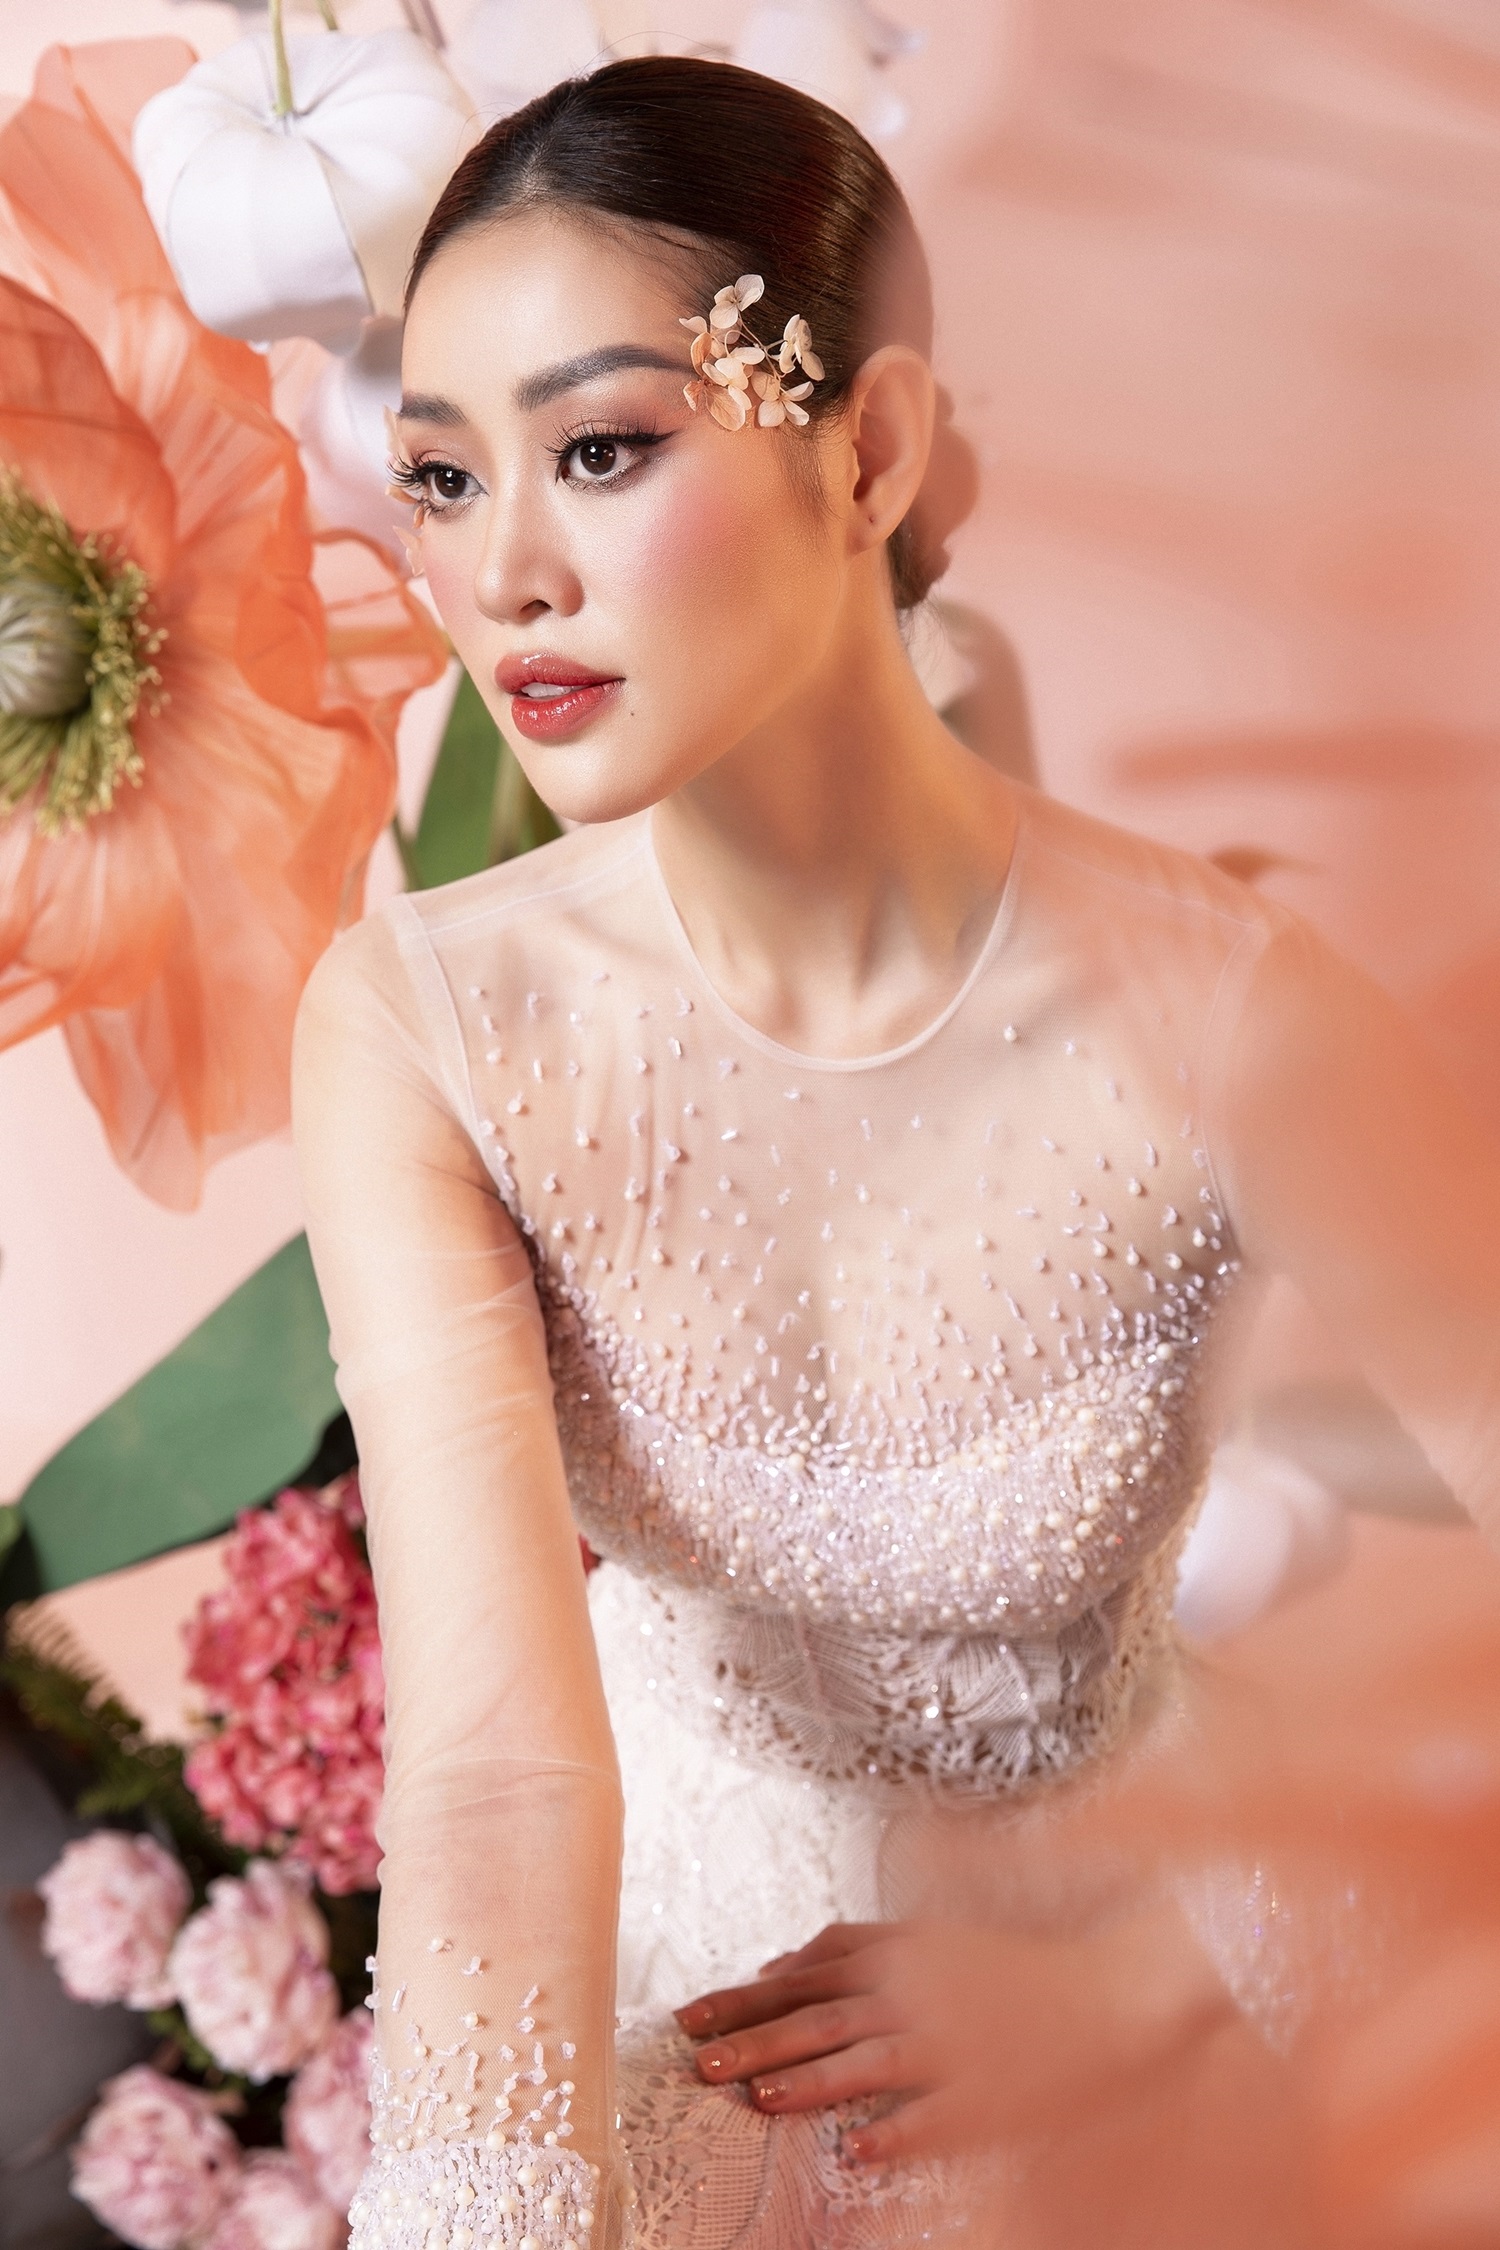 Hoa hậu Khánh Vân không đặt nặng cát sê khi diễn áo dài cho NTK Minh Châu - Ảnh 6.